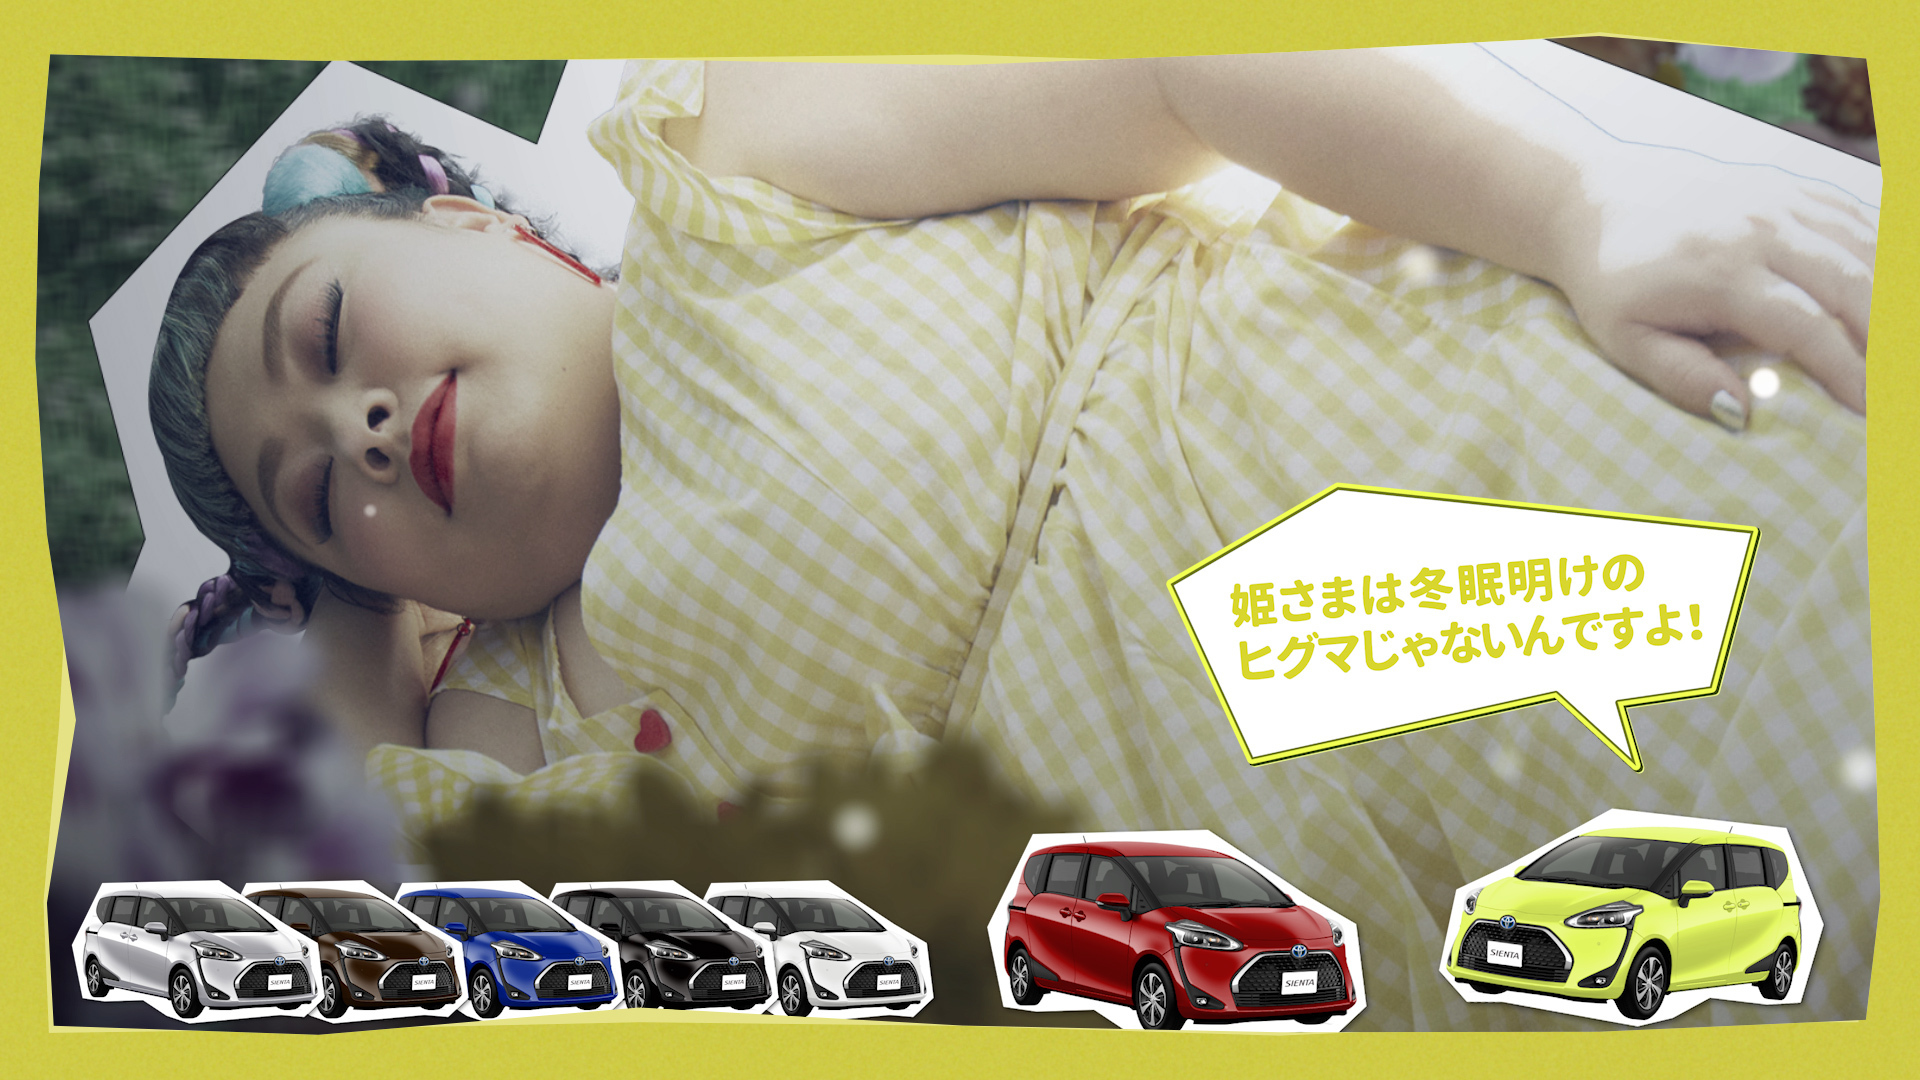 渡辺直美と7台の車たちによるミュージカル Cv部 最新作 眠り姫と7台のシエンタ が完成 株式会社チョコレイトのプレスリリース